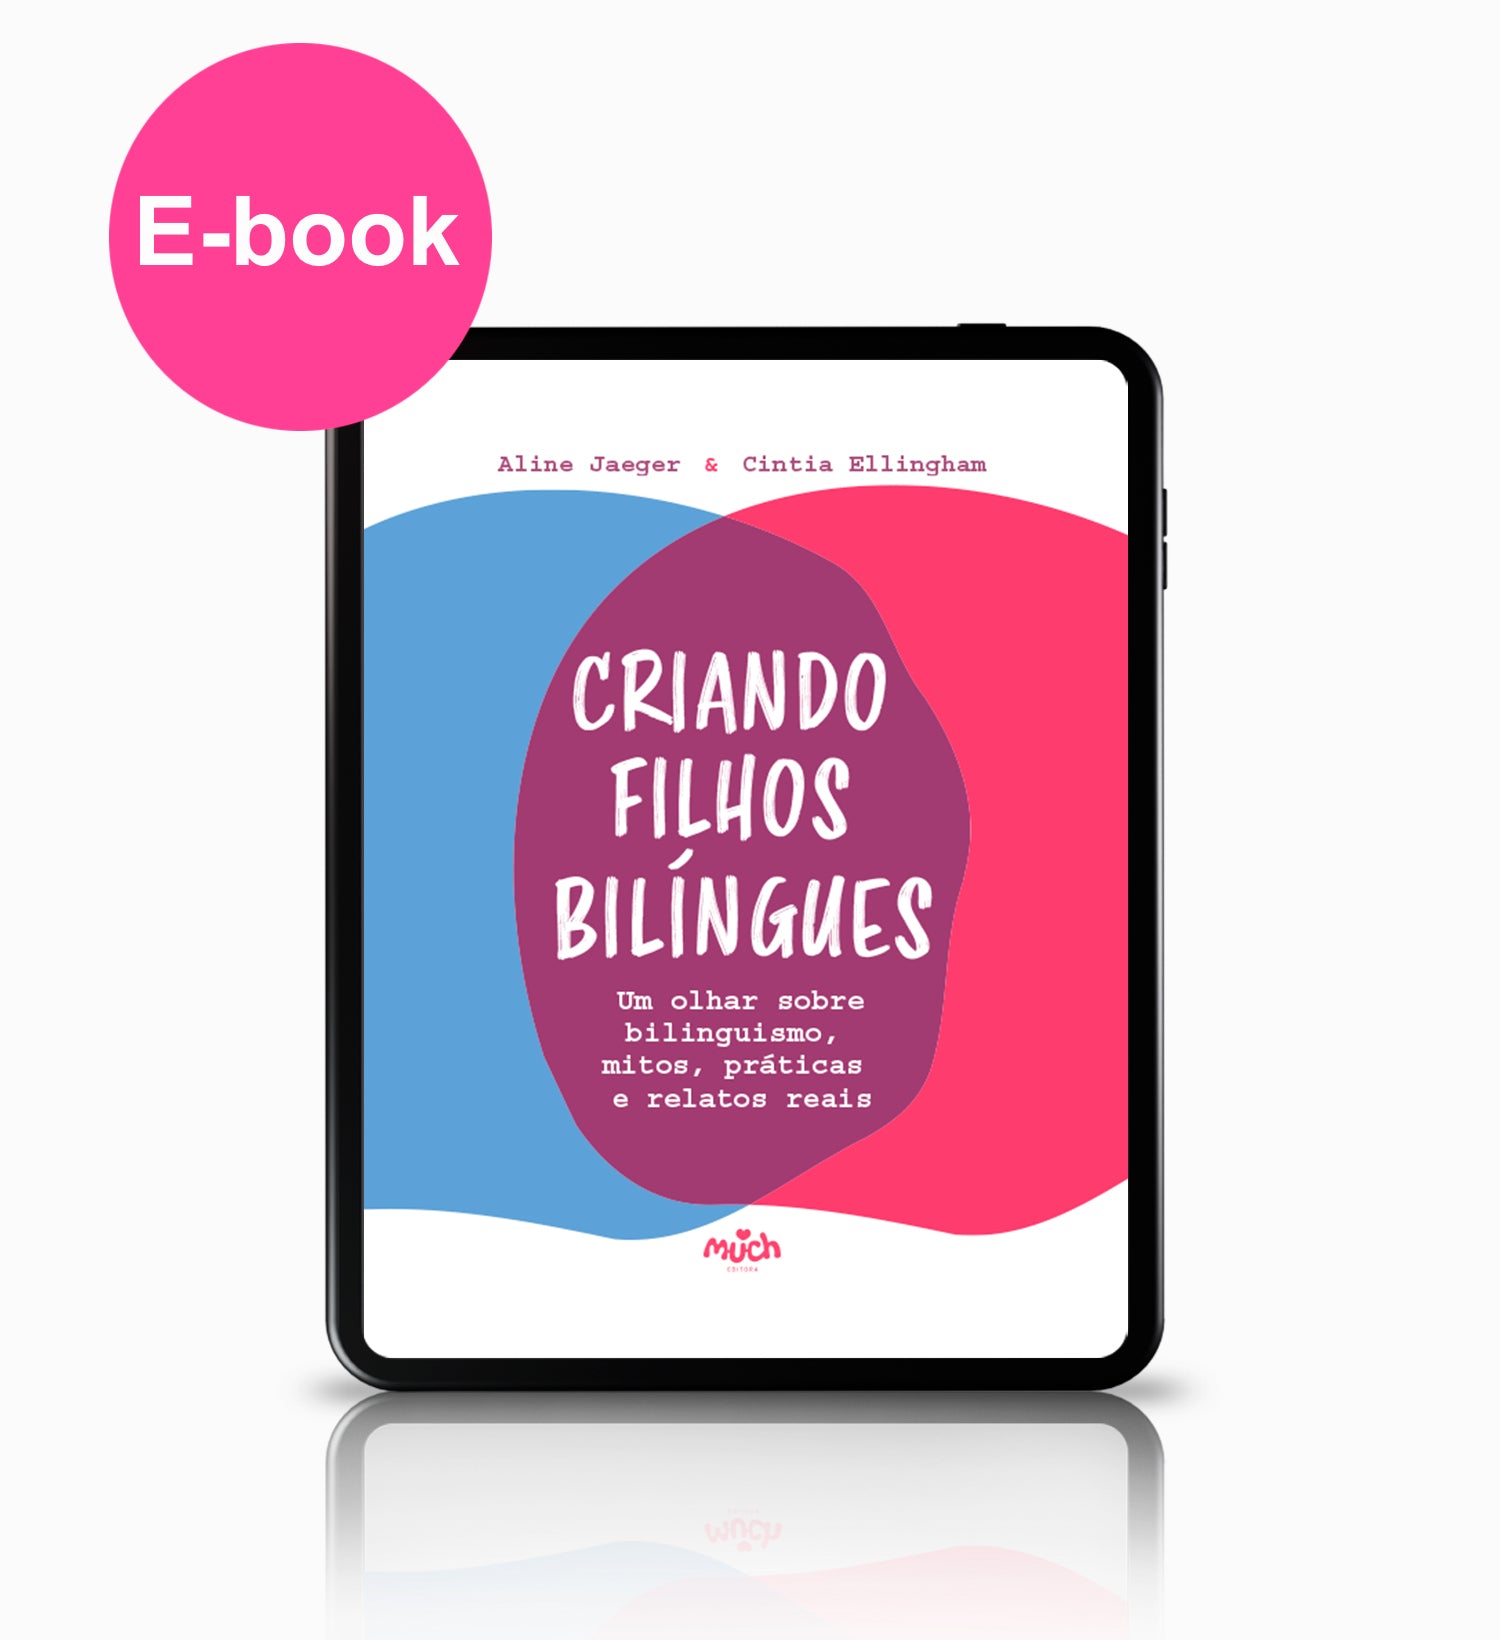 E-BOOK CRIANDO FILHOS BILÍNGUES - Um olhar sobre bilinguismo, mitos, práticas e relatos reais